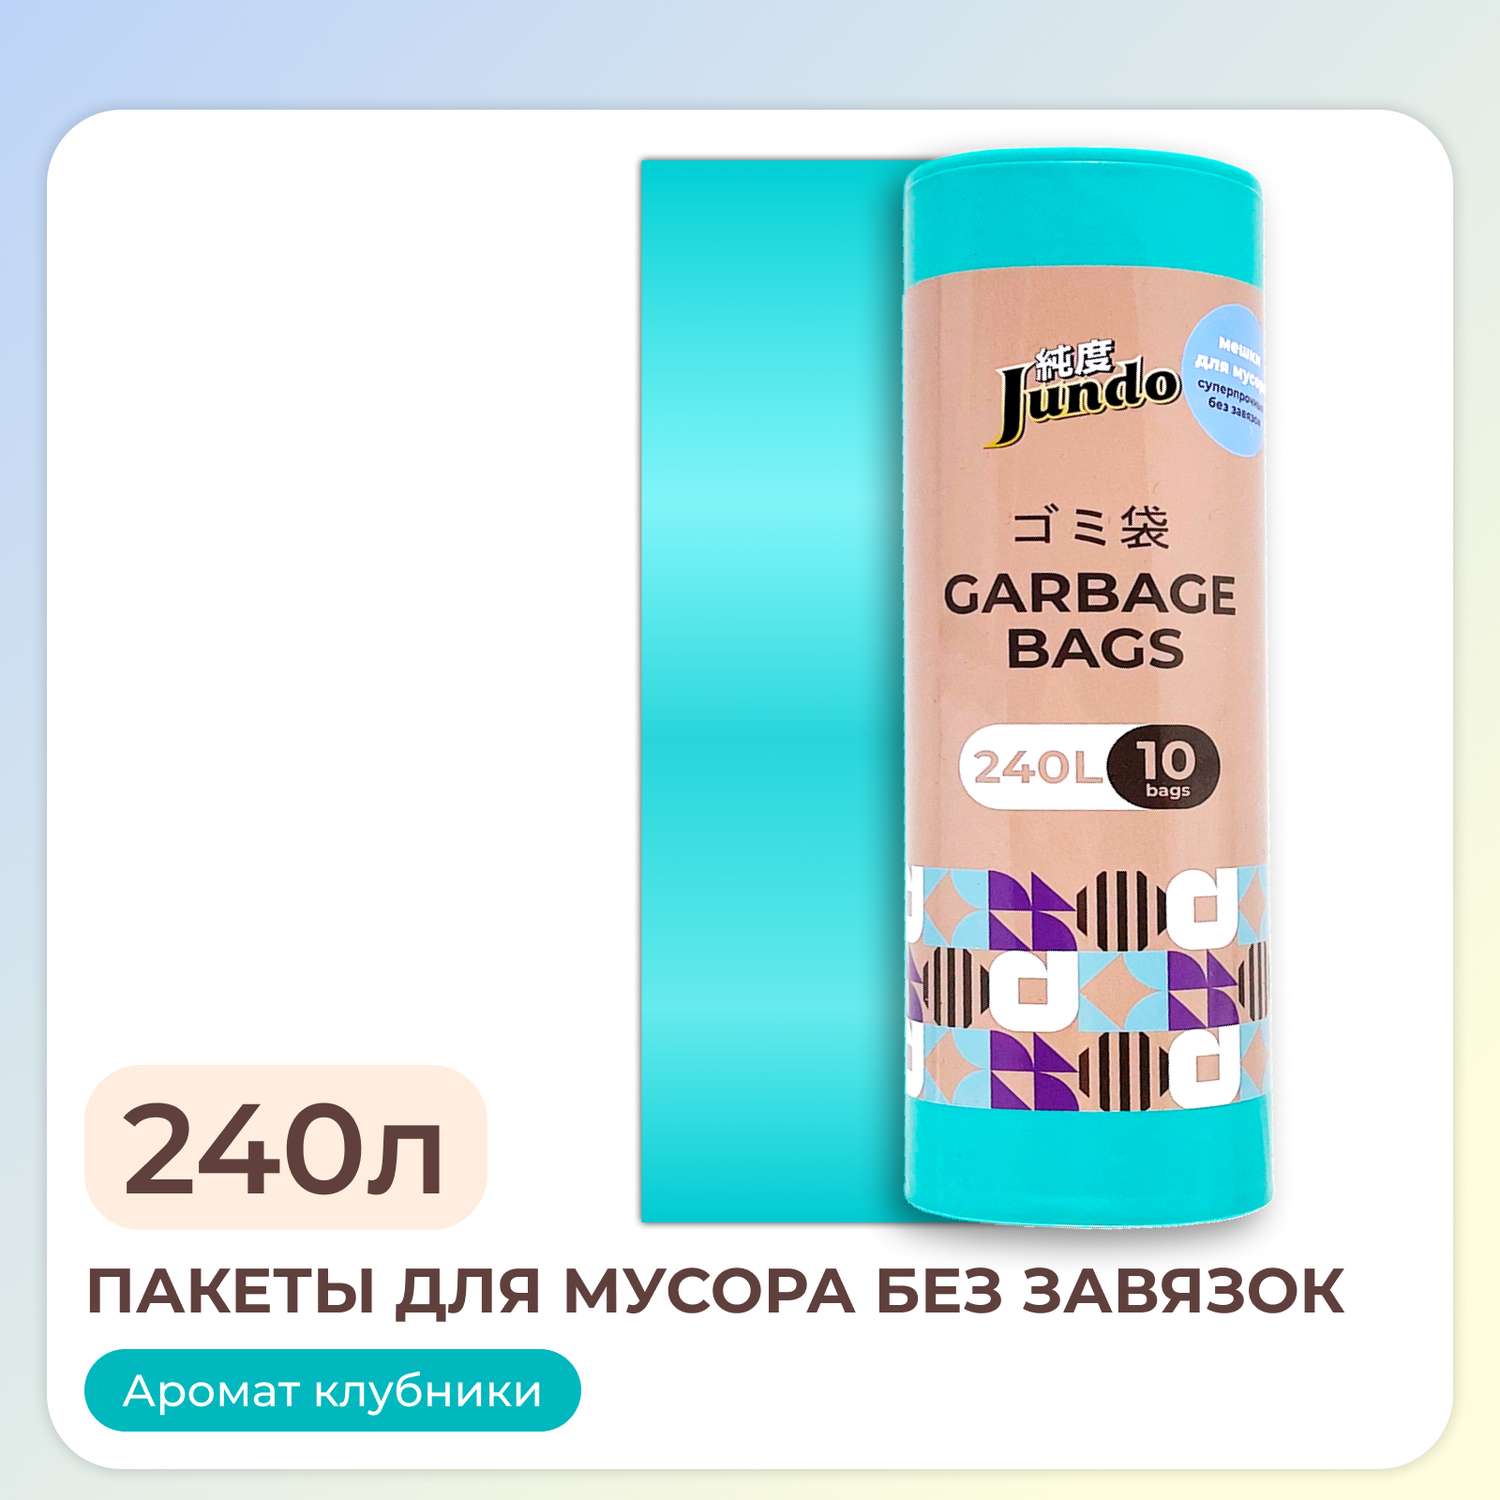 Пакеты для мусора Jundo Garbage bags без завязок 240л 10шт 38 мкм бирюзовые ароматизированные прочные 90х130см - фото 1